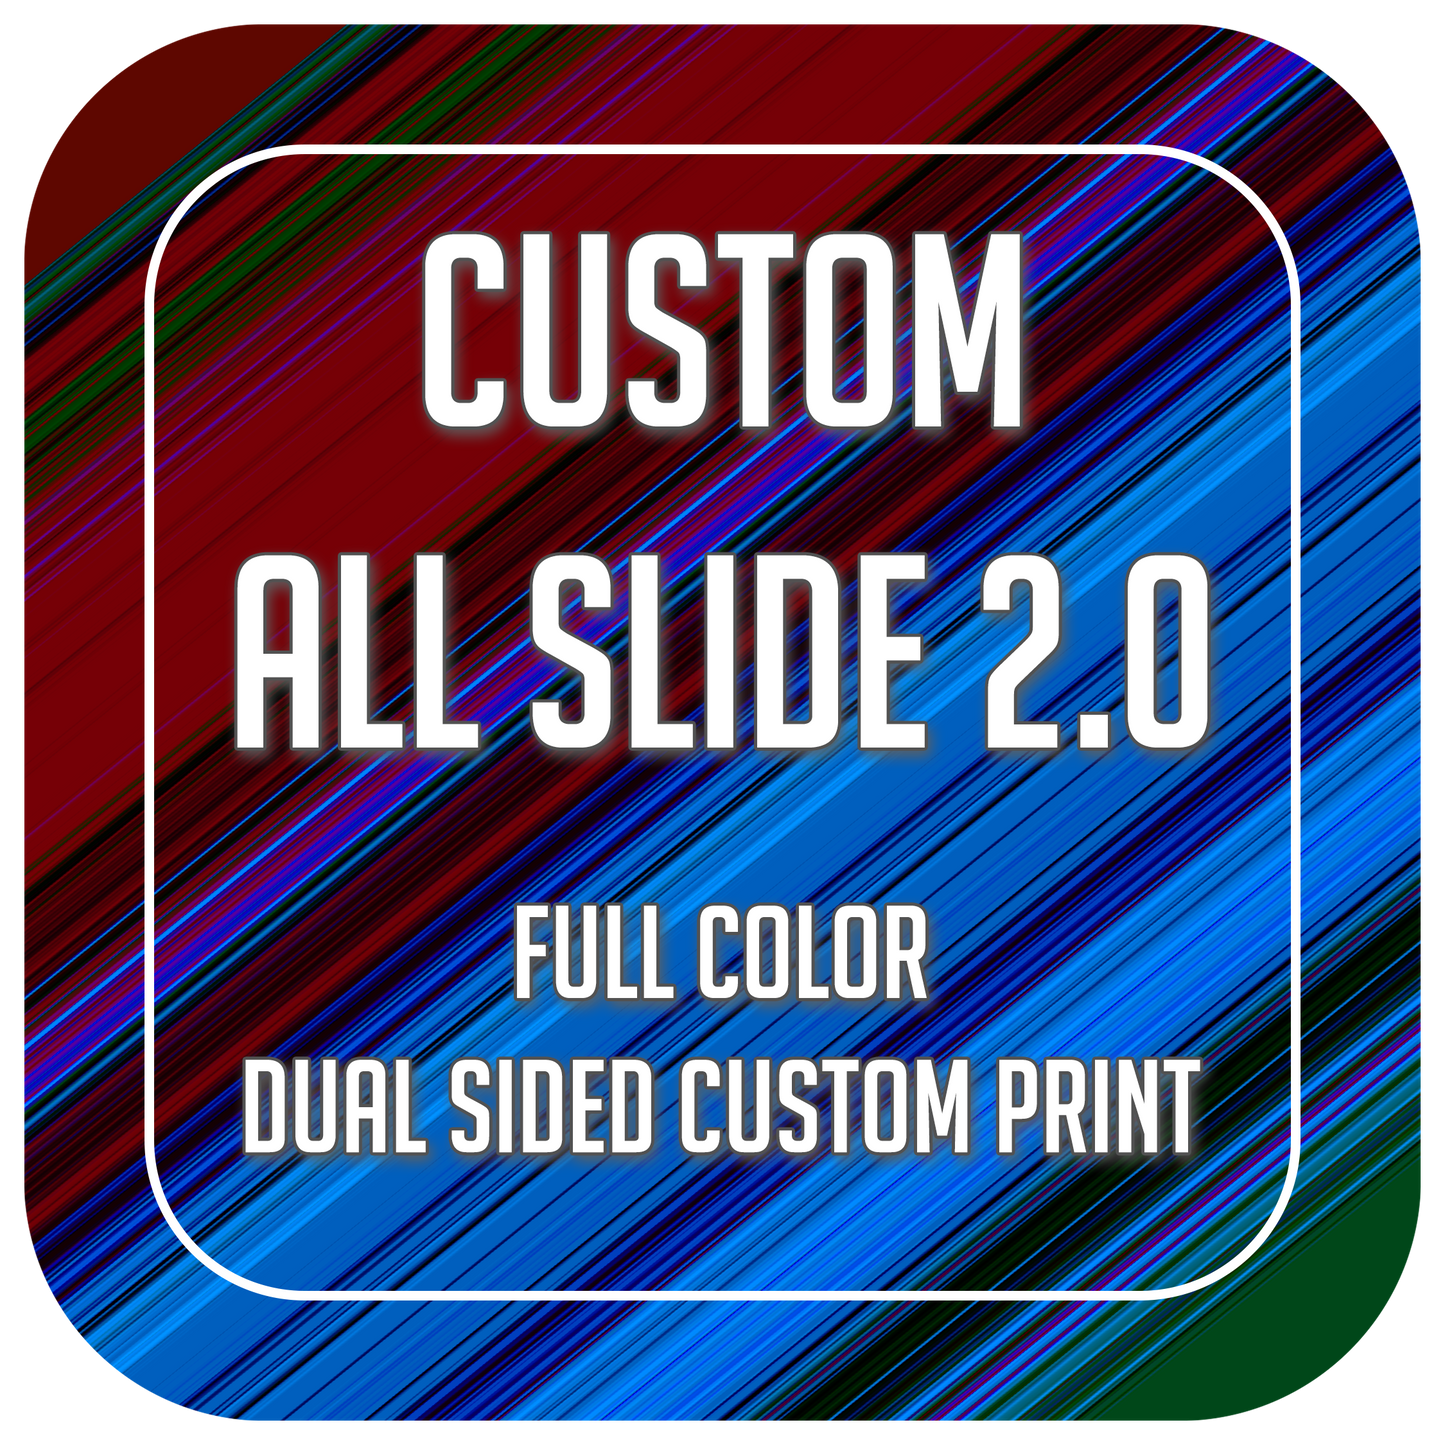 Custom All Slides 2.0 - Full Custom Print (Set of 4 Bags)